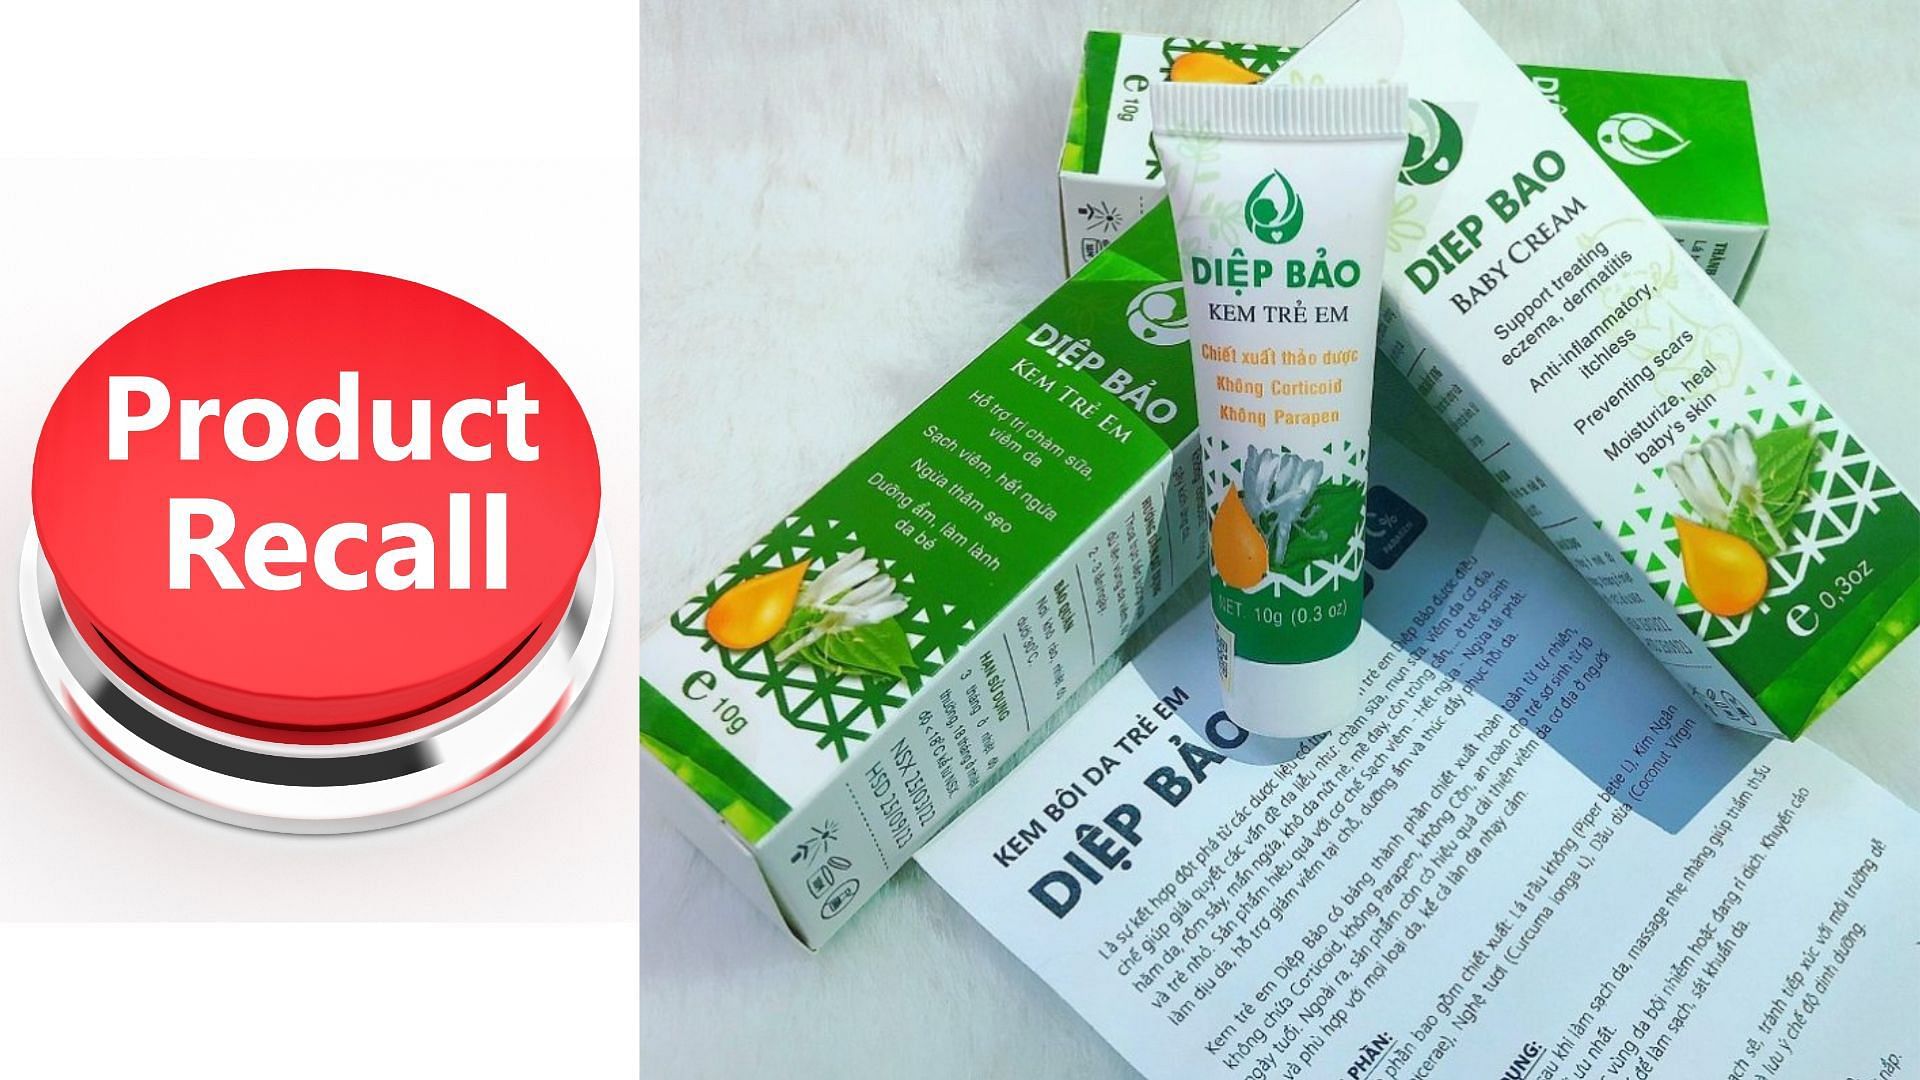 Shop Me Ca recalls its Diep Bao Creams over a potential lead contamination concern (Image via Shop Me Ca)